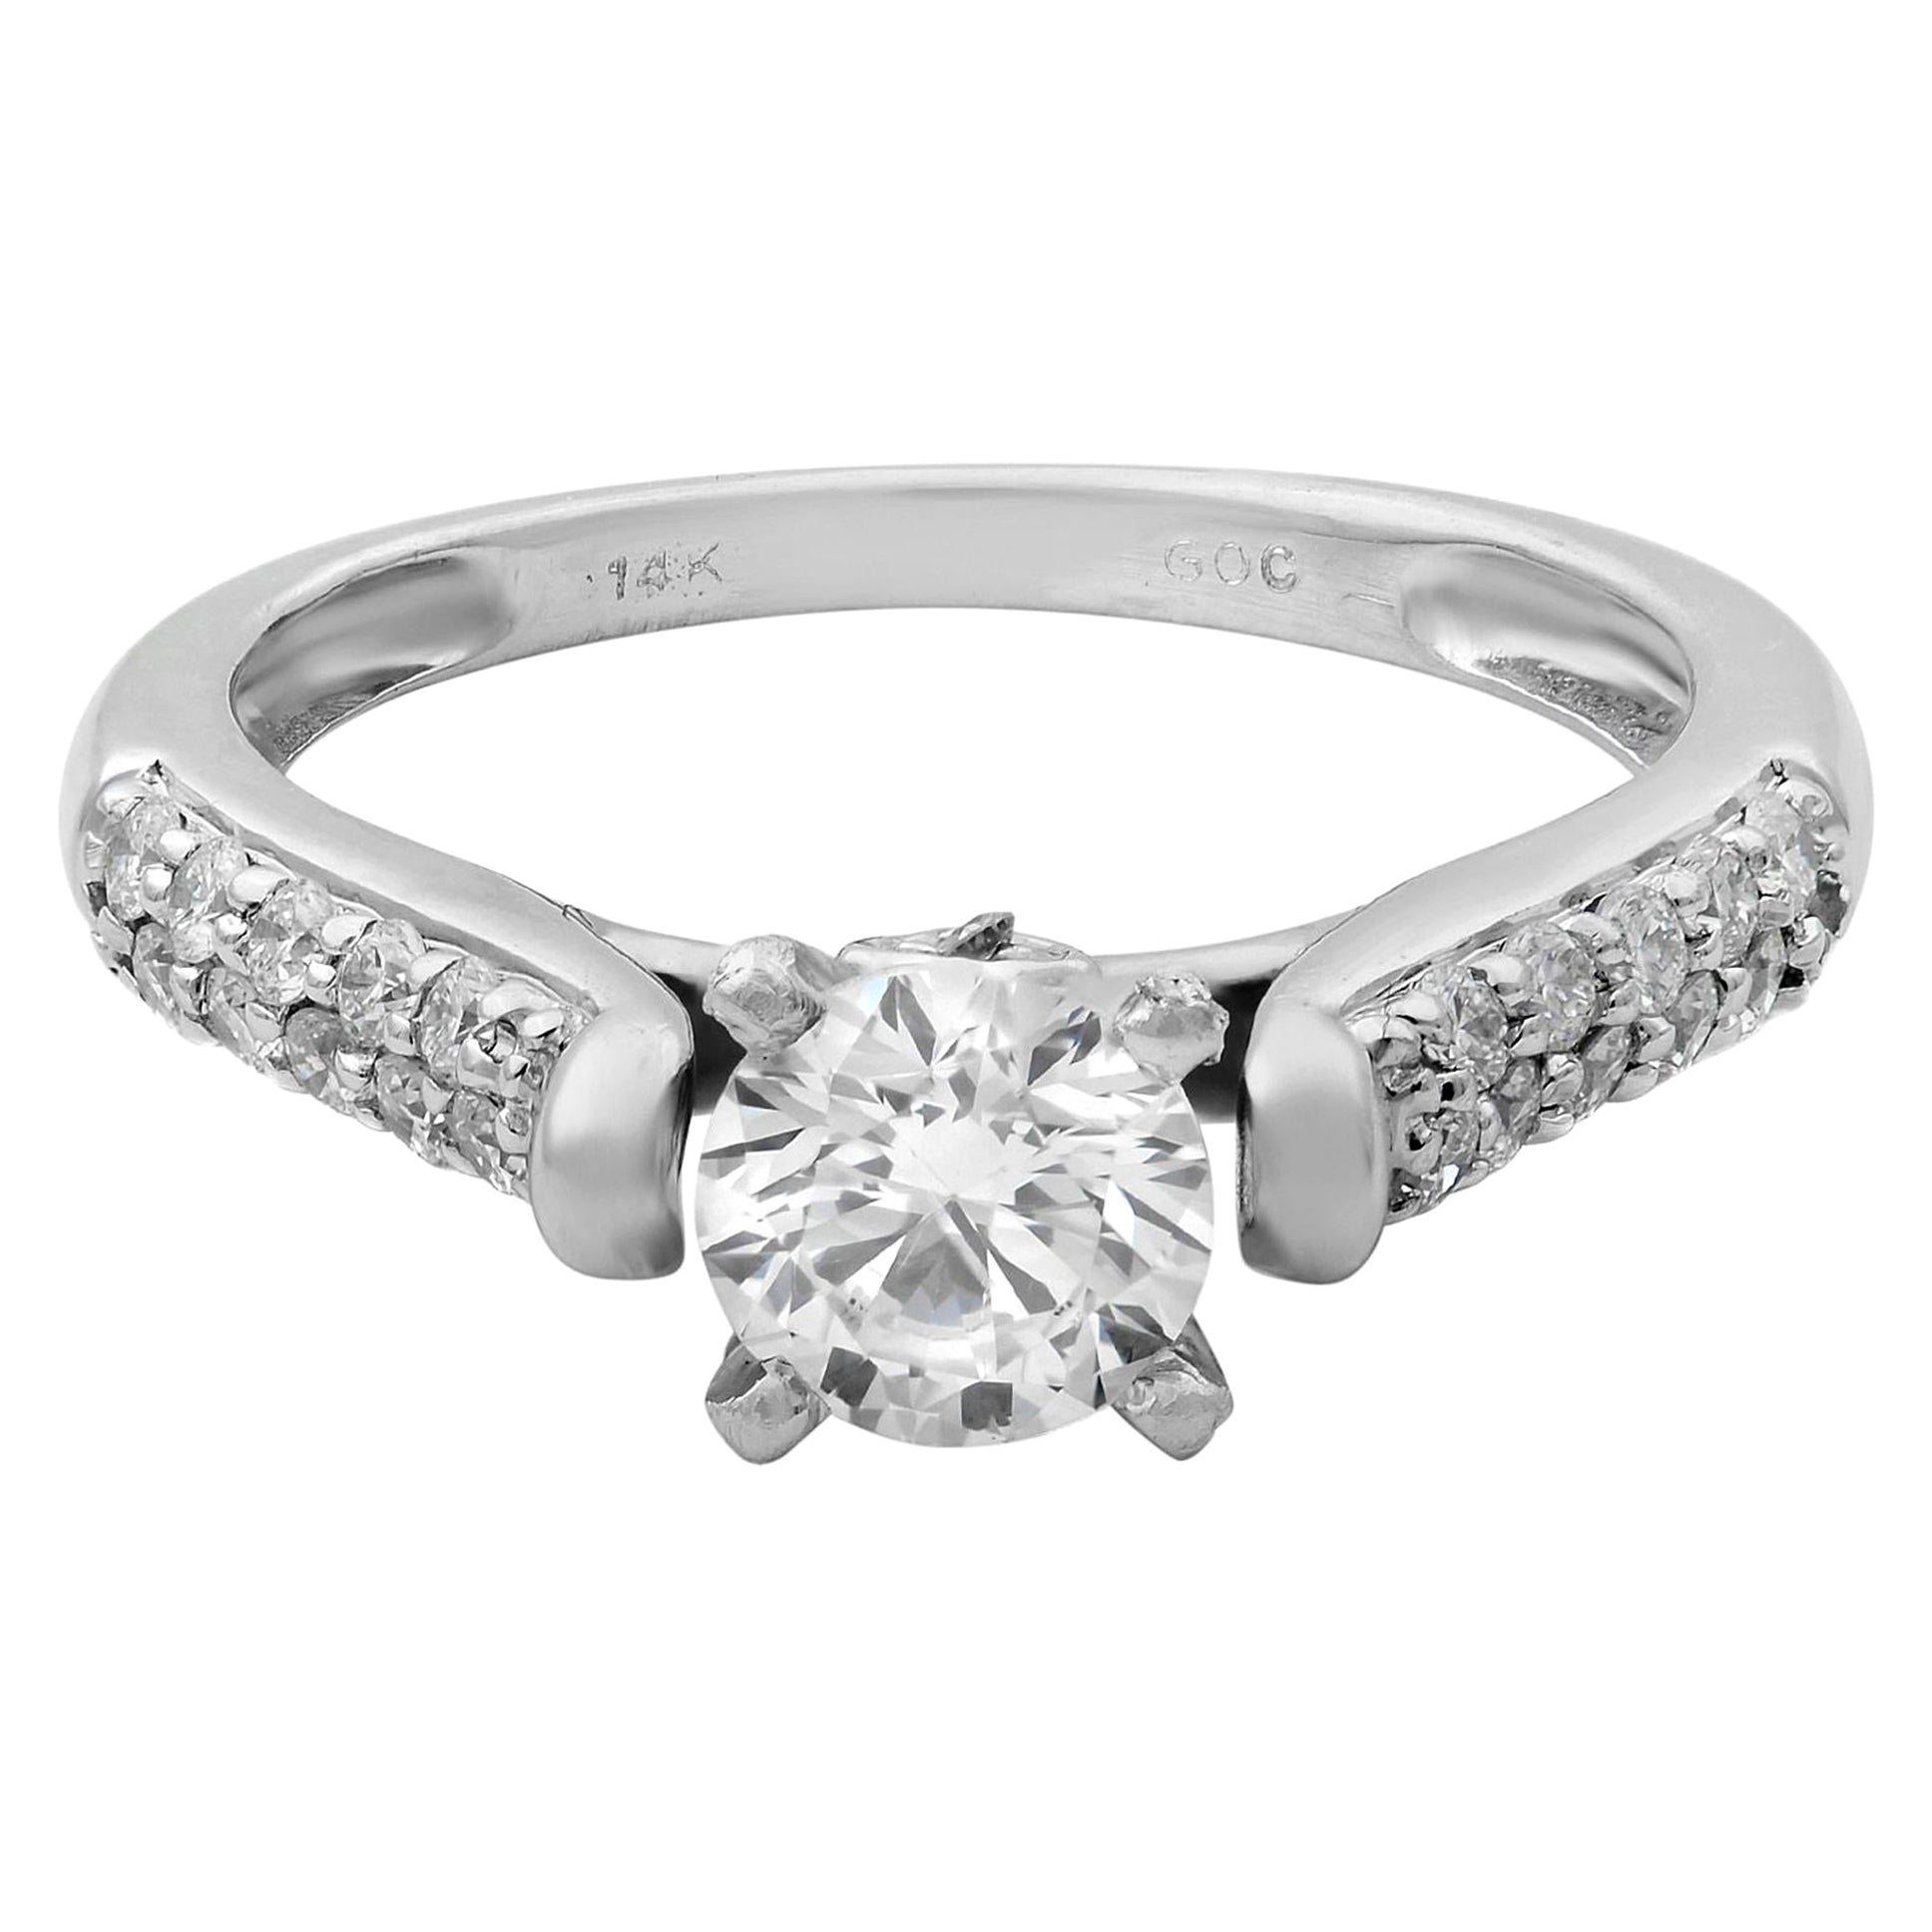 Rachel Koen 14 Karat White Gold Round Cut Diamond Engagement Ring 0.75 Carat